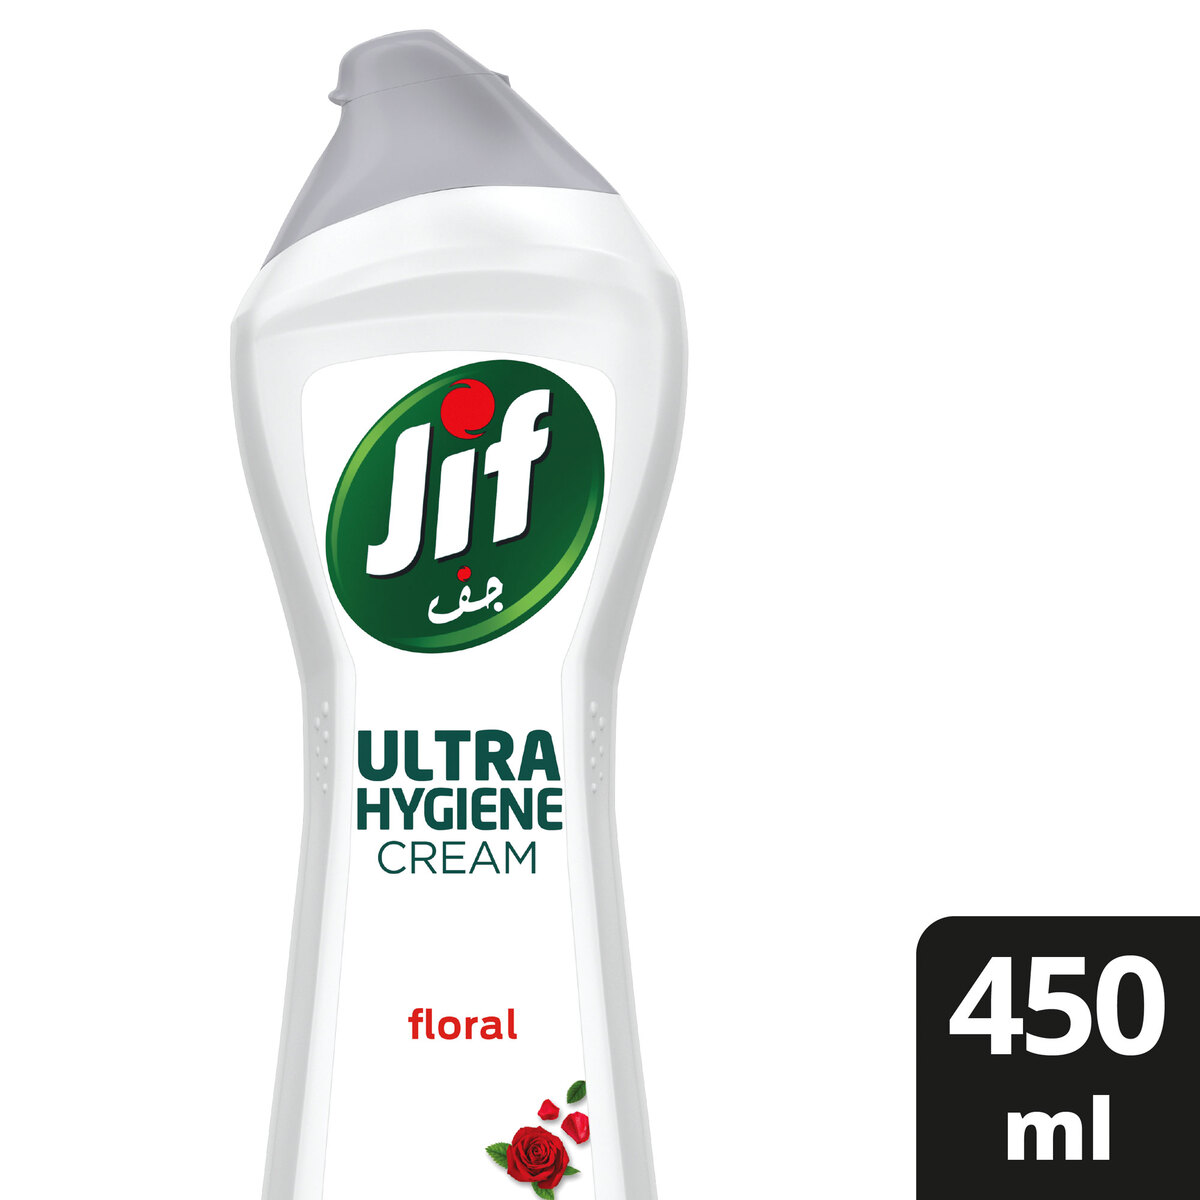 Buy Jif Floral Ultra Hygiene Cream 450ml Online at Best Price | Scouring Creams | Lulu KSA in Saudi Arabia